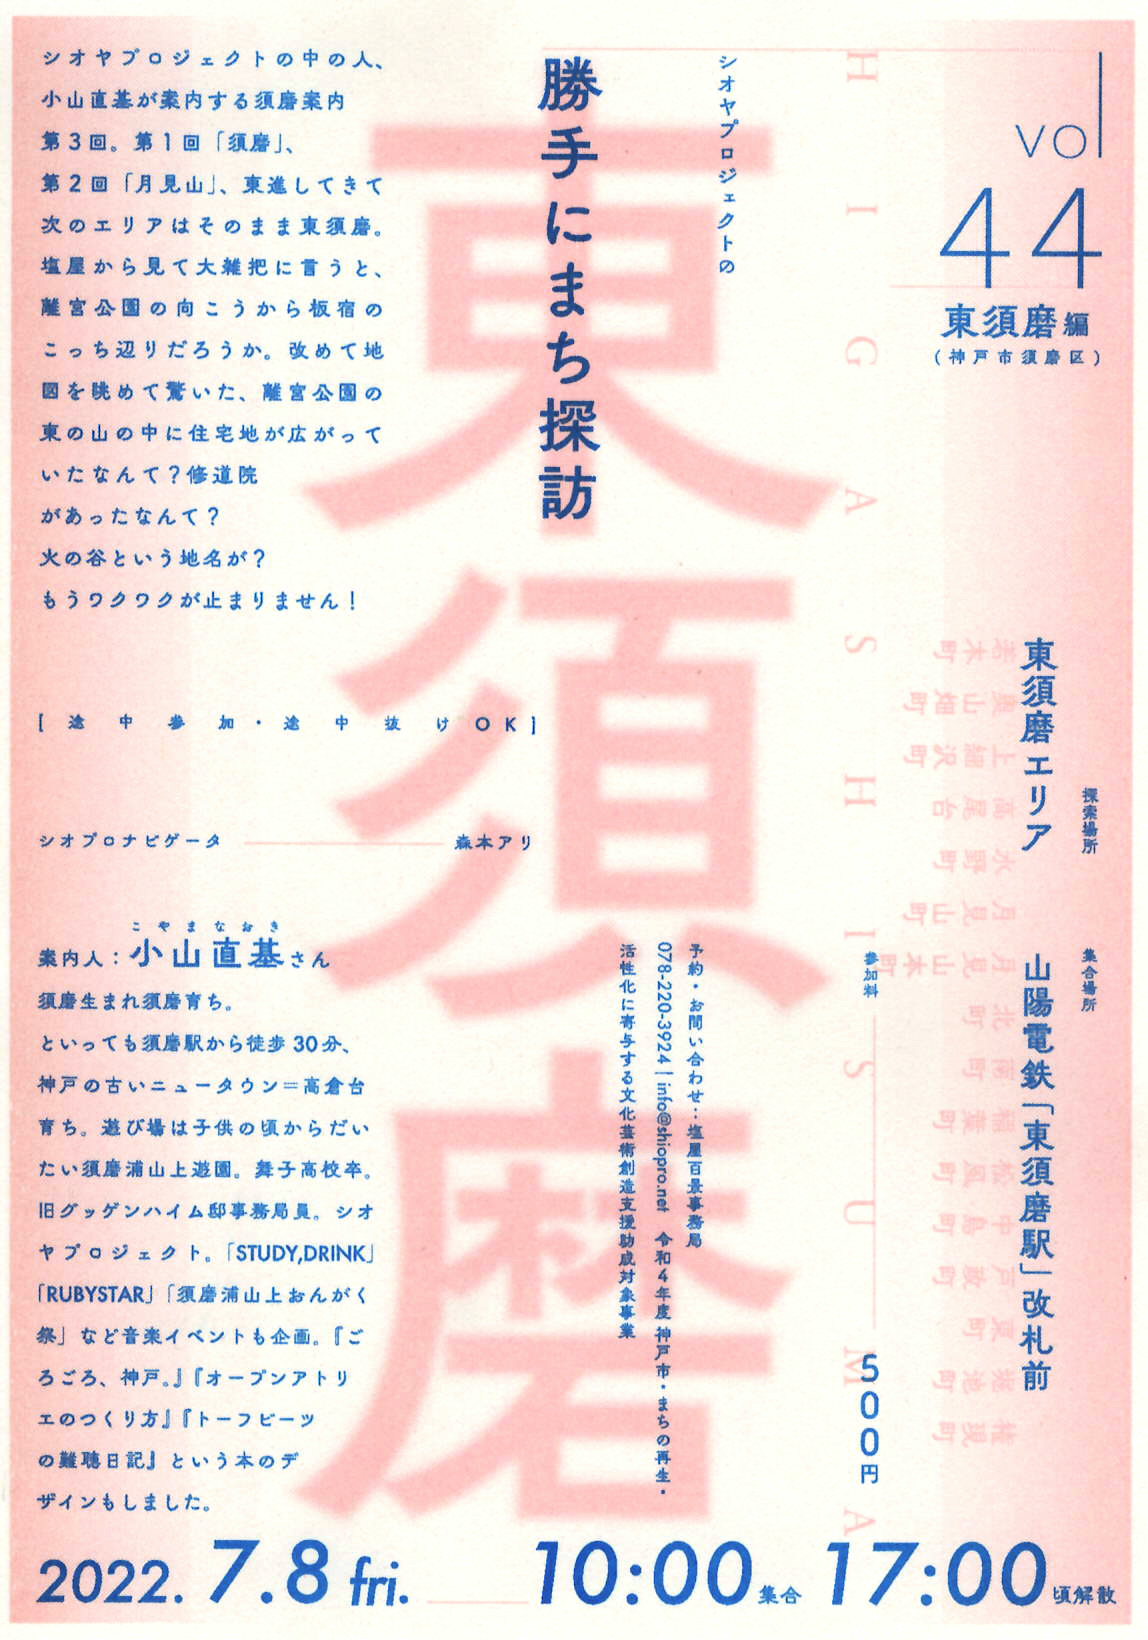 7/8(金) シオヤプロジェクトの勝手にまち探訪 vol.44 東須磨編